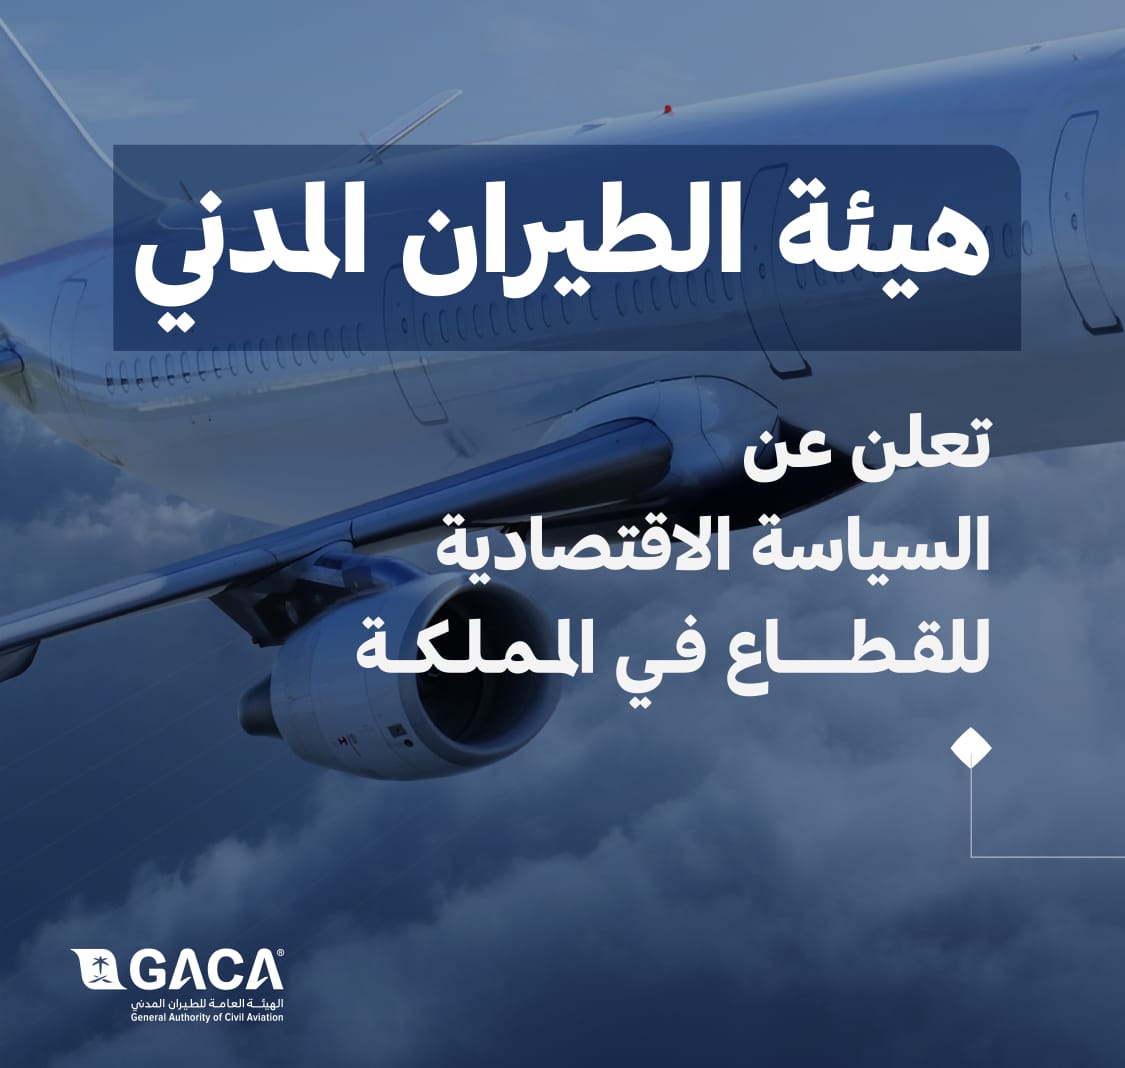 “الطيران المدني” تعلن عن السياسة الاقتصادية للقطاع في المملكة وتصدر ثلاثة لوائح